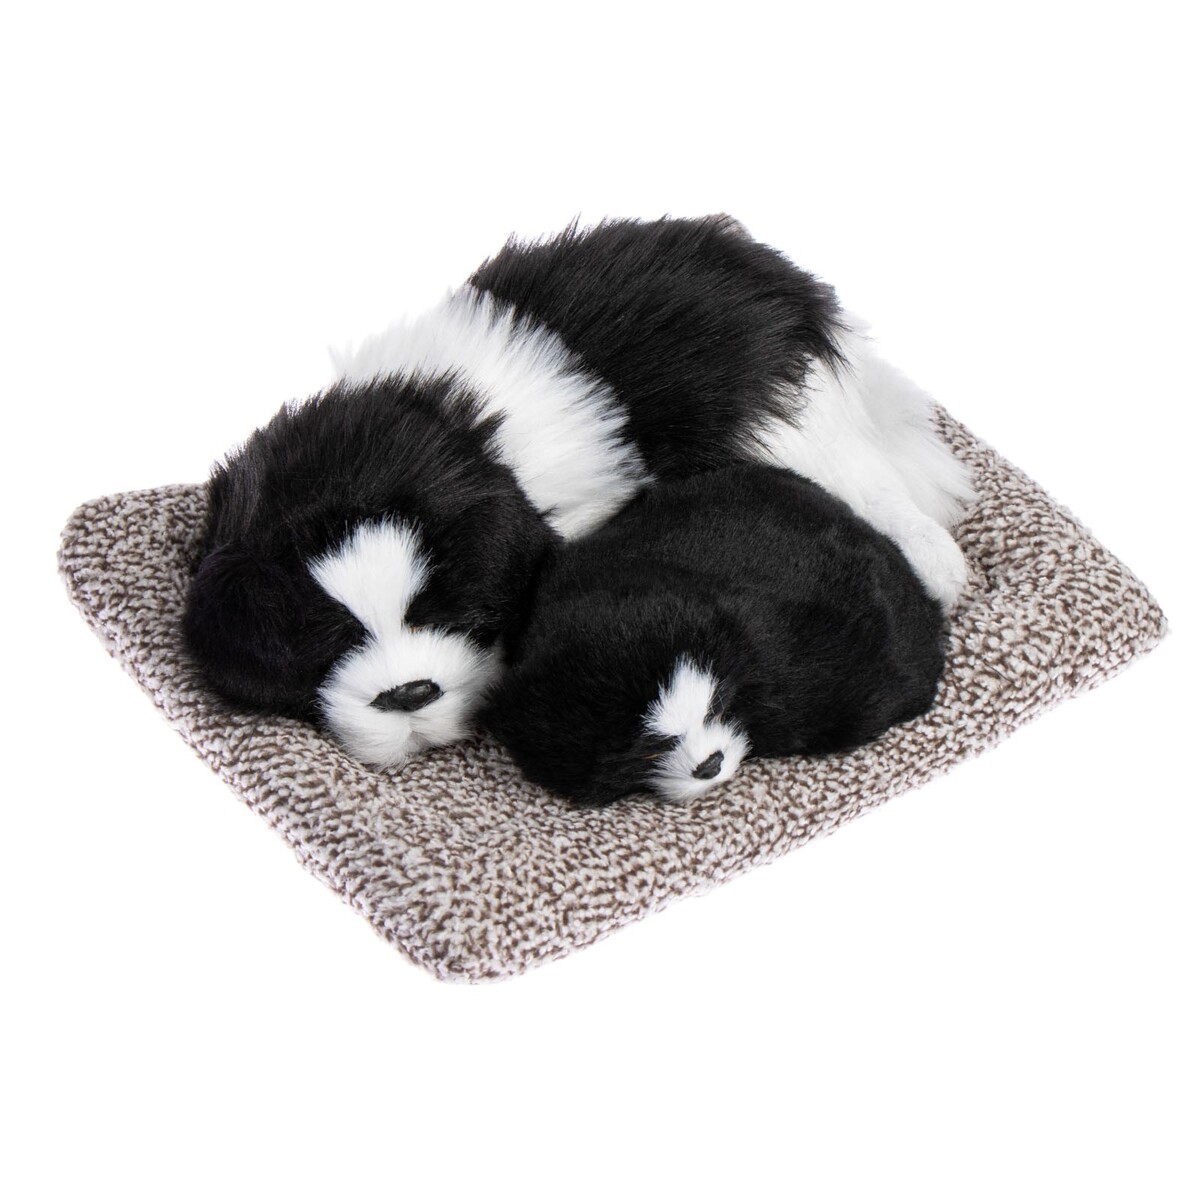 Игрушка на панель авто, собаки на подушке, бело-черный окрас игрушка на панель авто собаки на подушке бело окрас